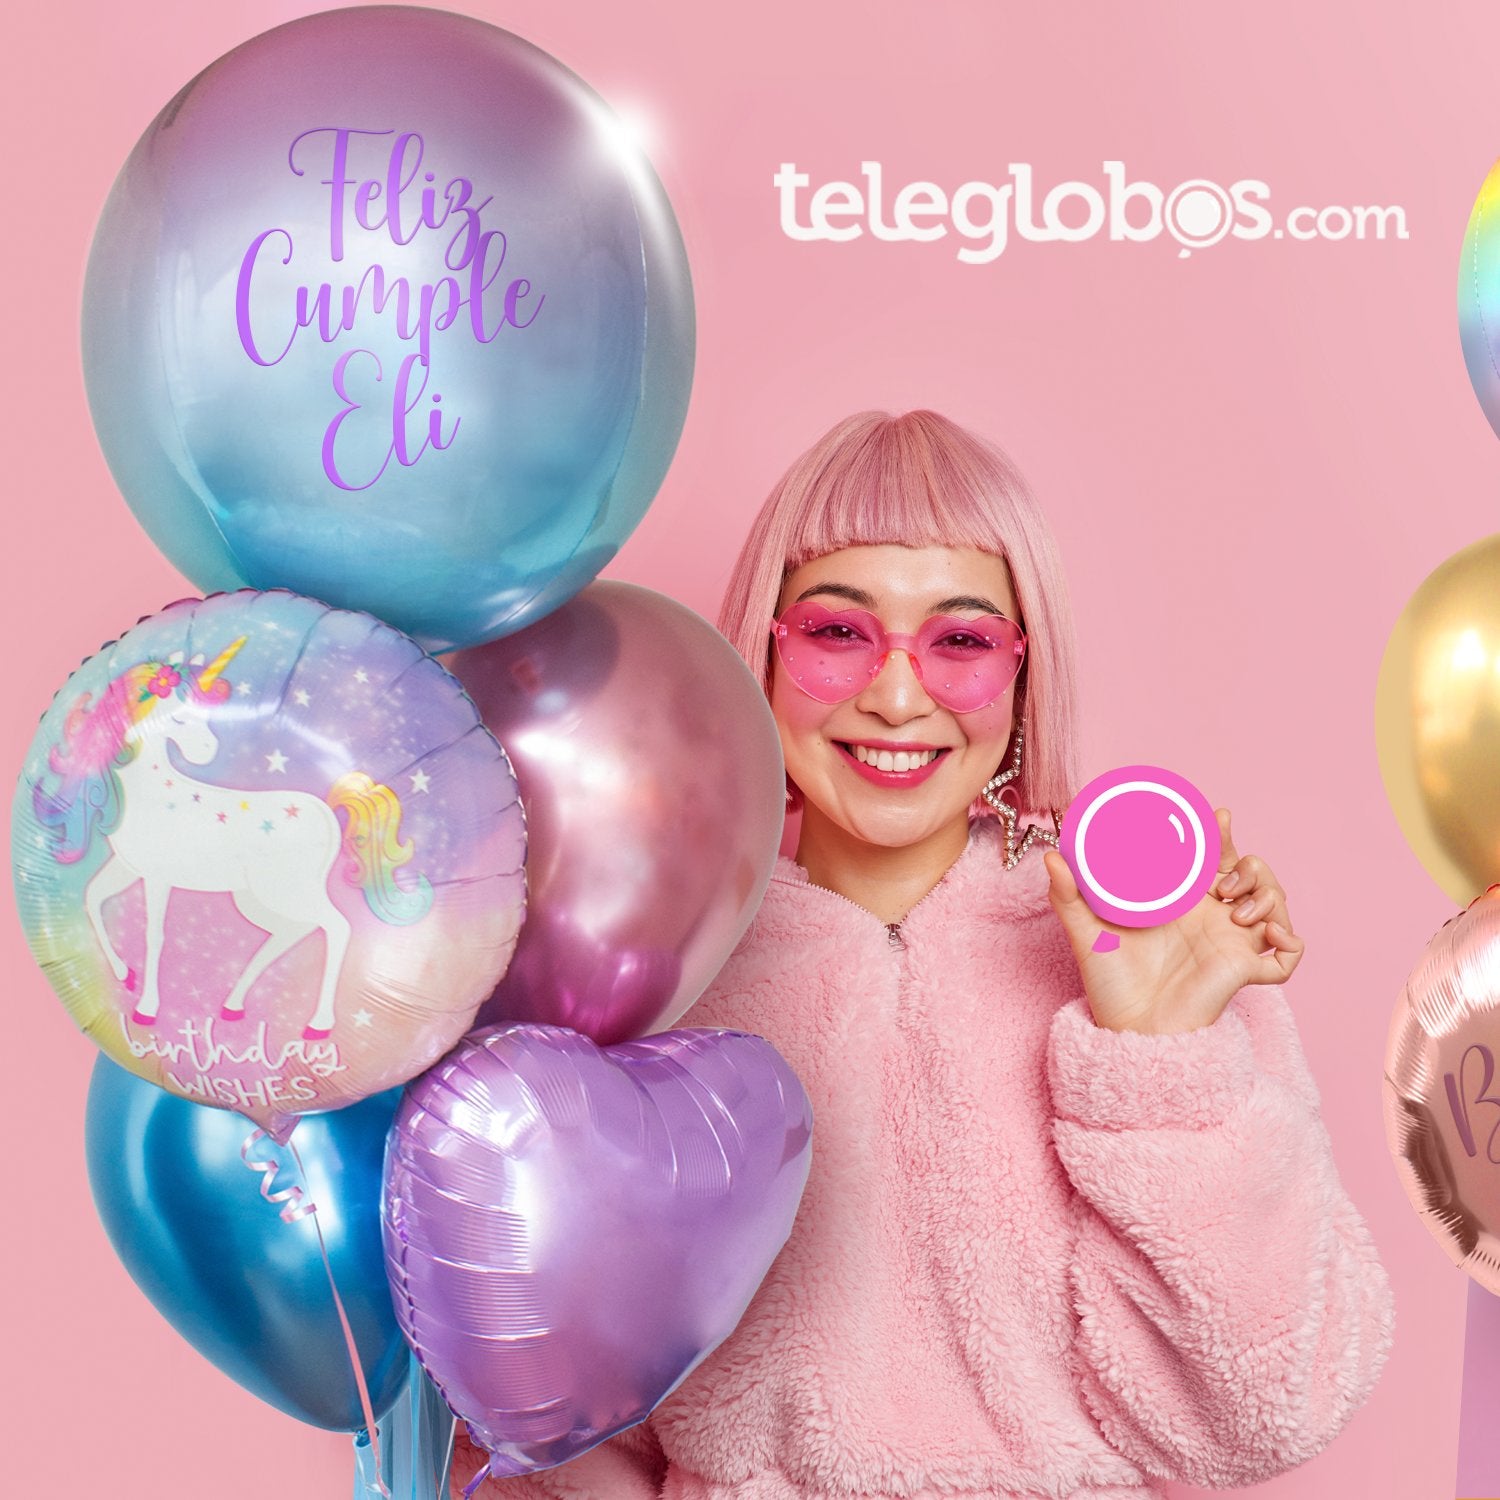  Globos Orbz Personalizados México CDMX Teleglobos Tienda de globos